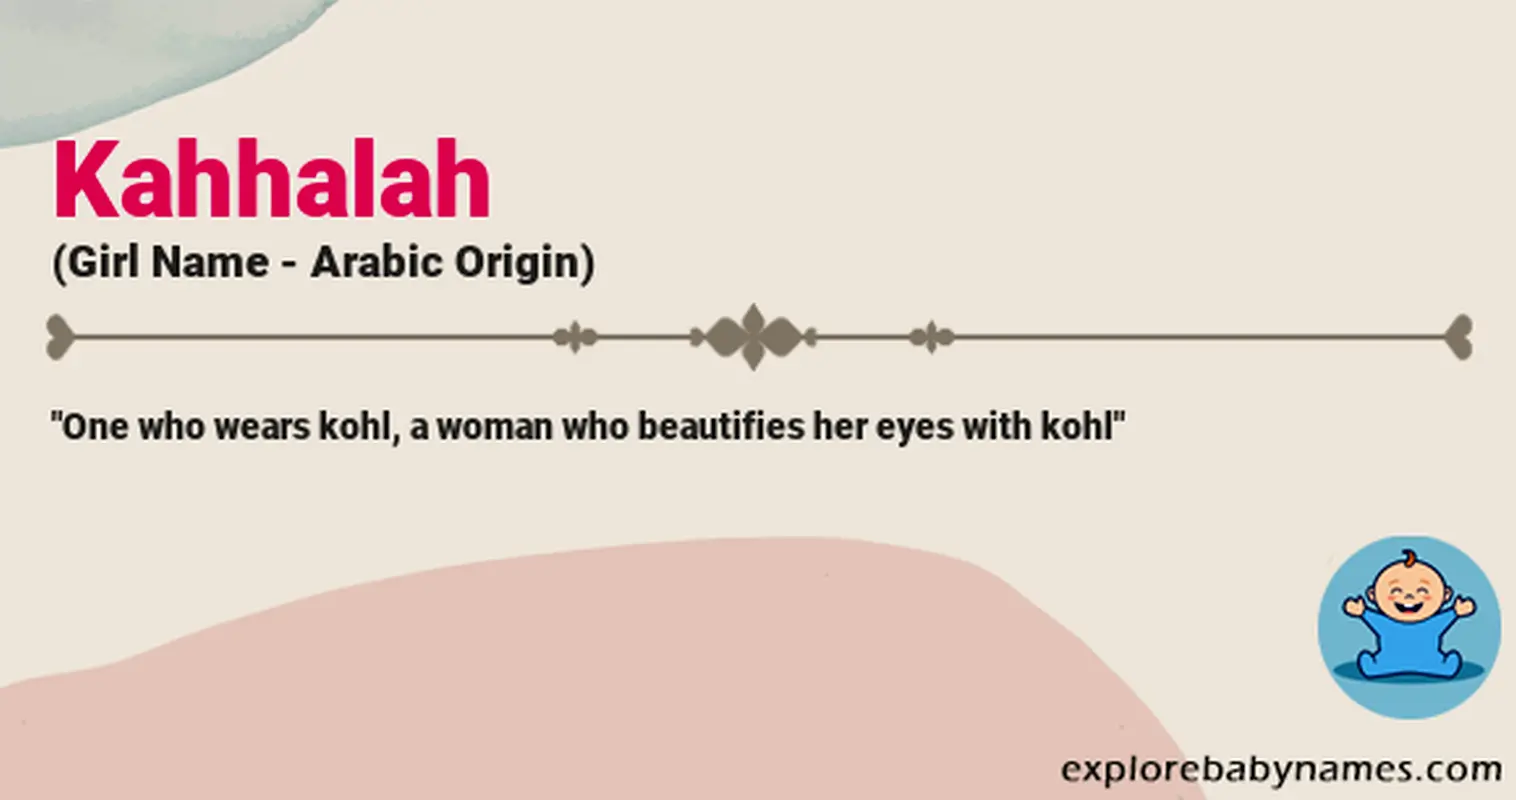 Meaning of Kahhalah